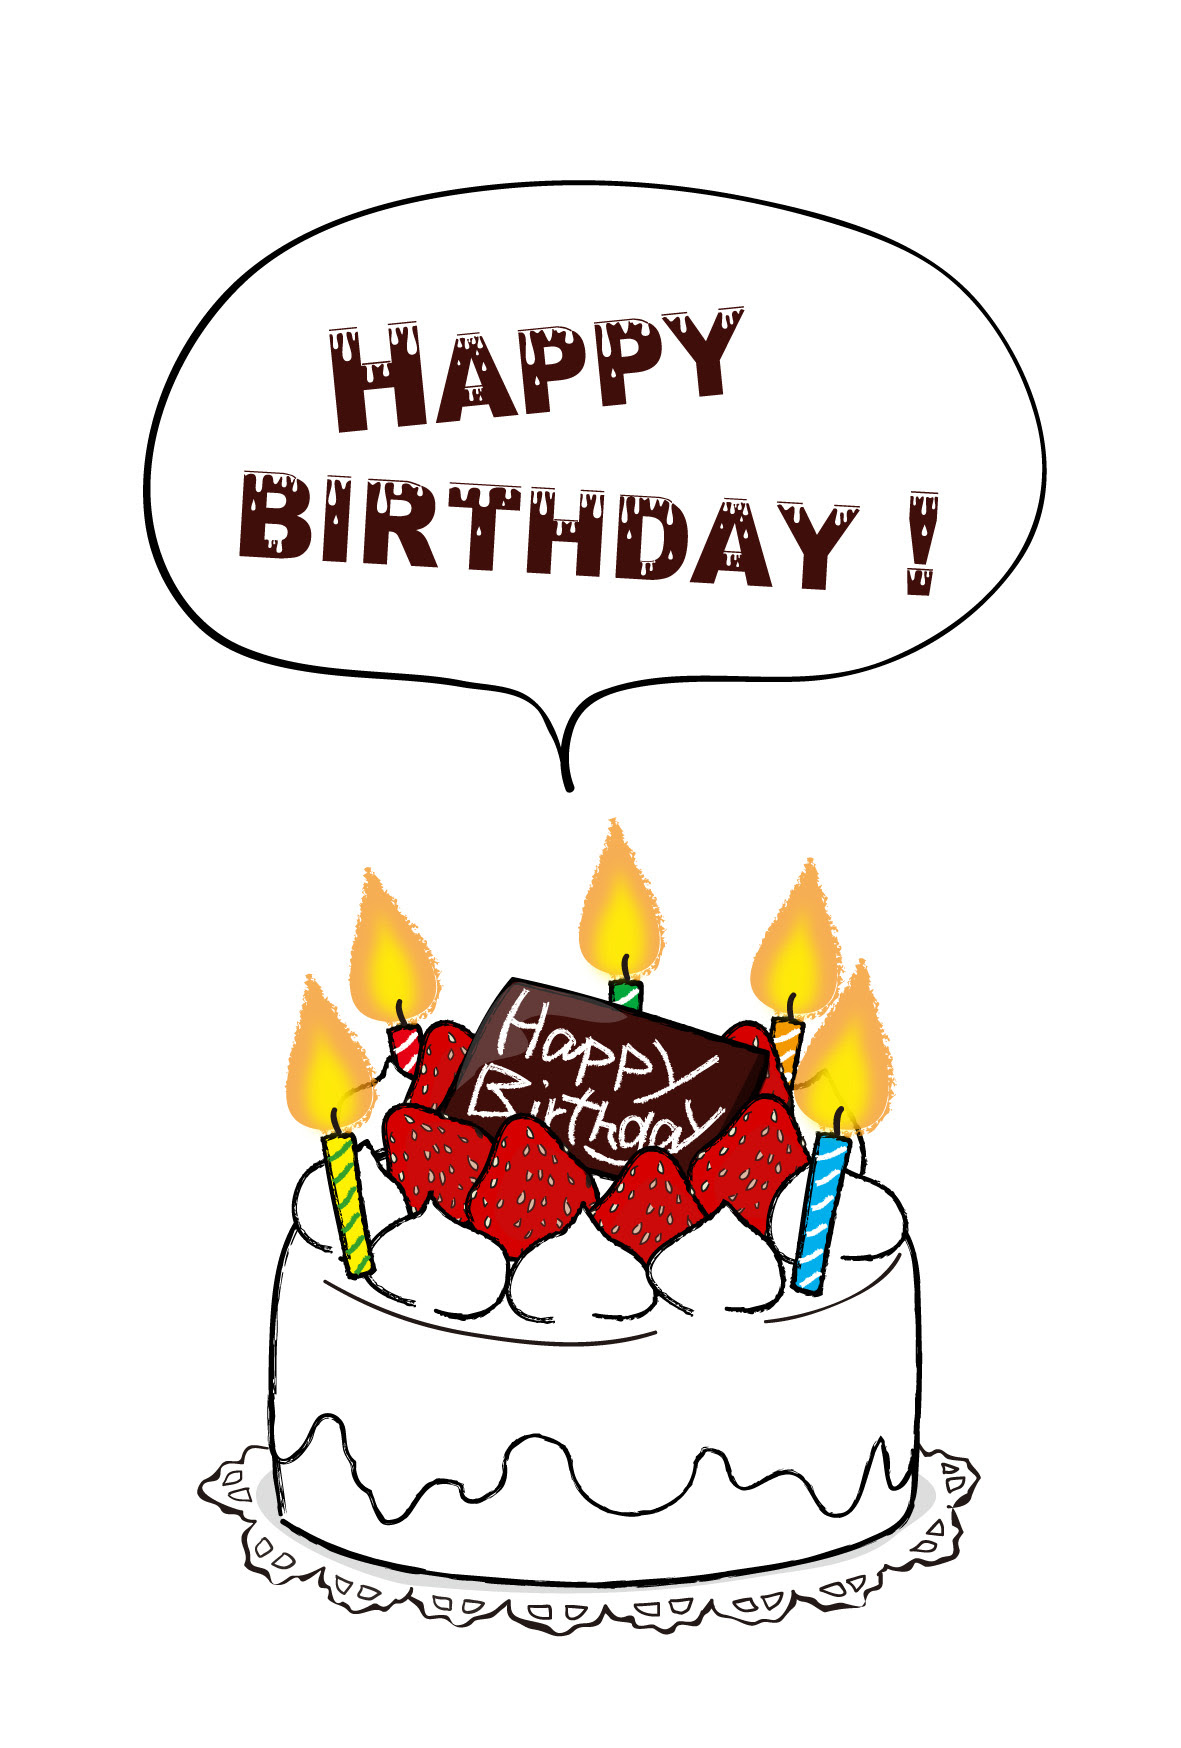 50 素晴らしい誕生日カード ケーキ イラスト 全イラスト集